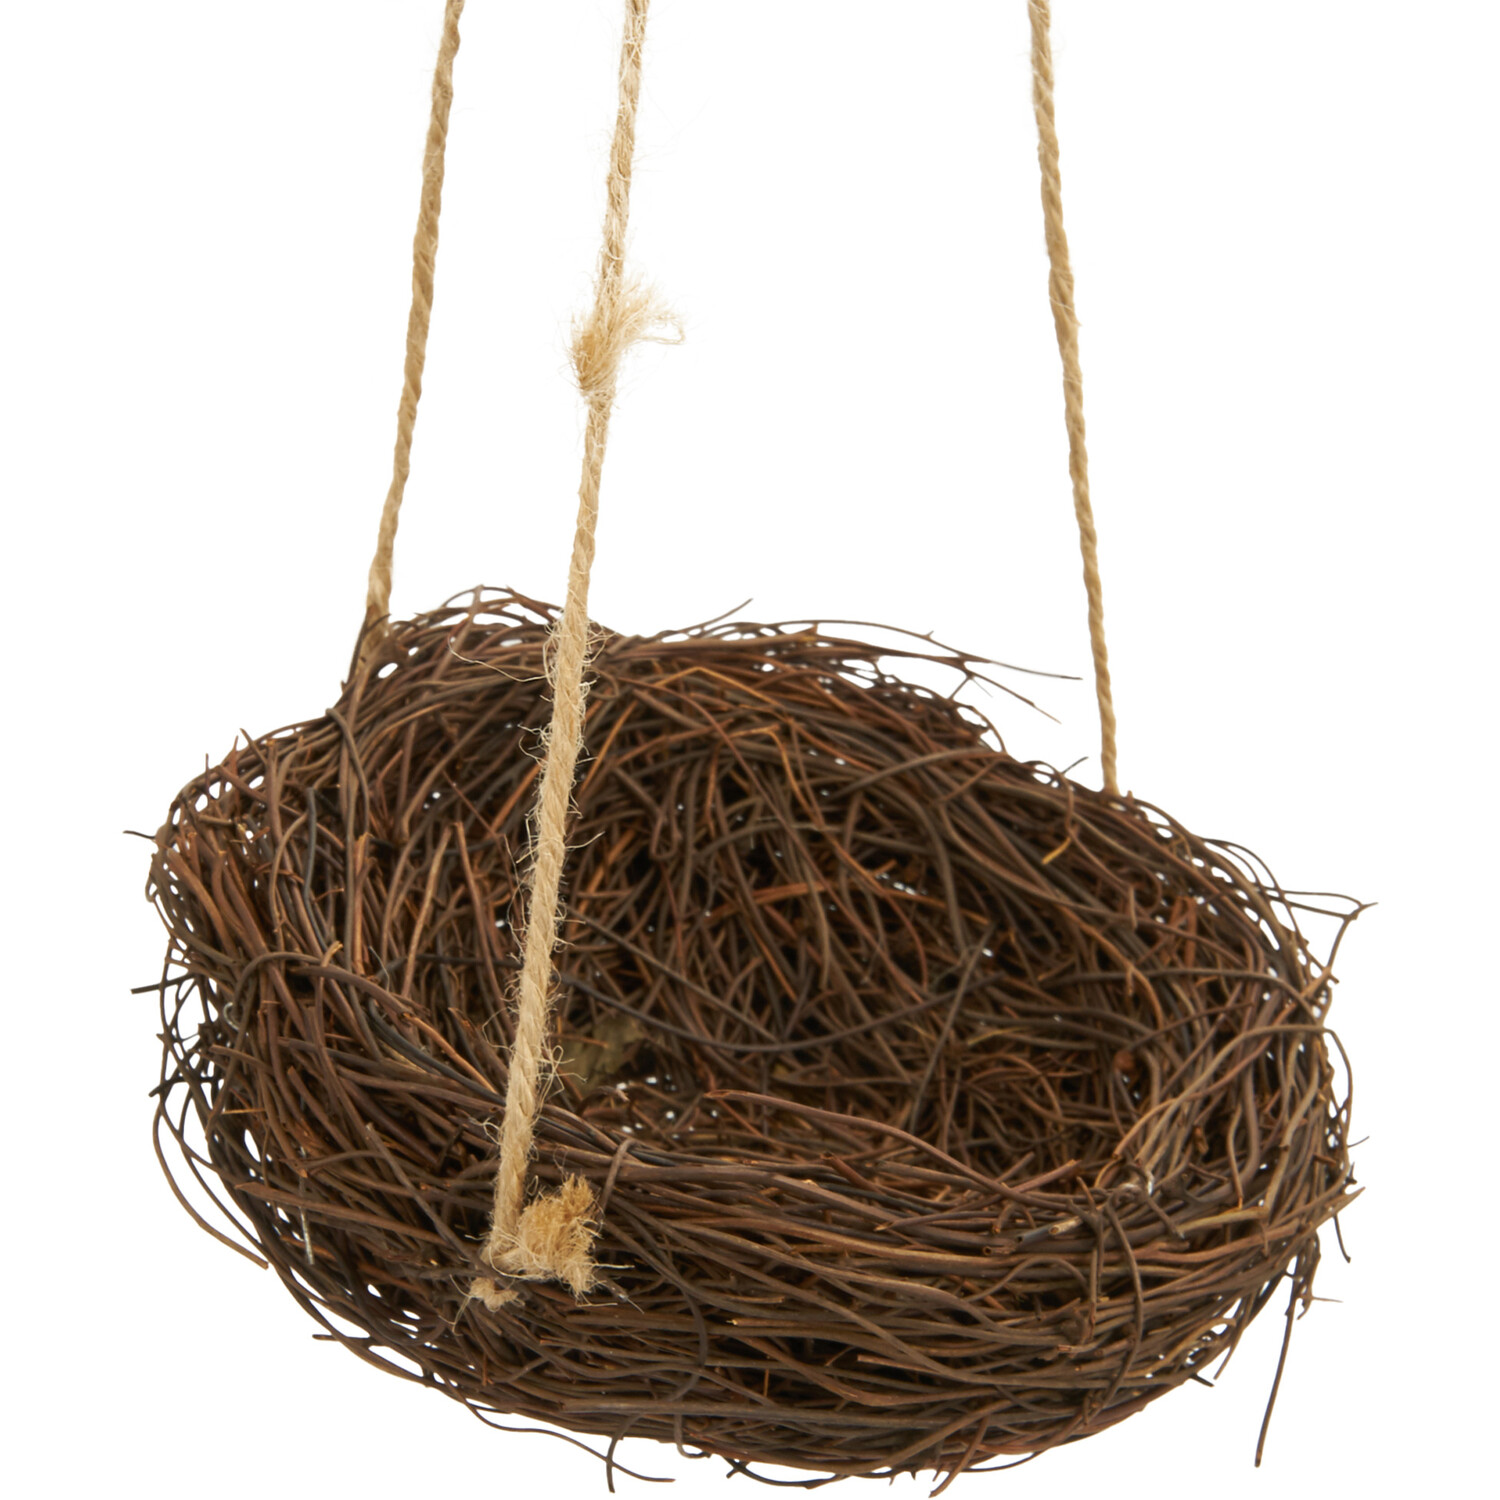 Nest Hanging Basket Easter Decoration Image 2